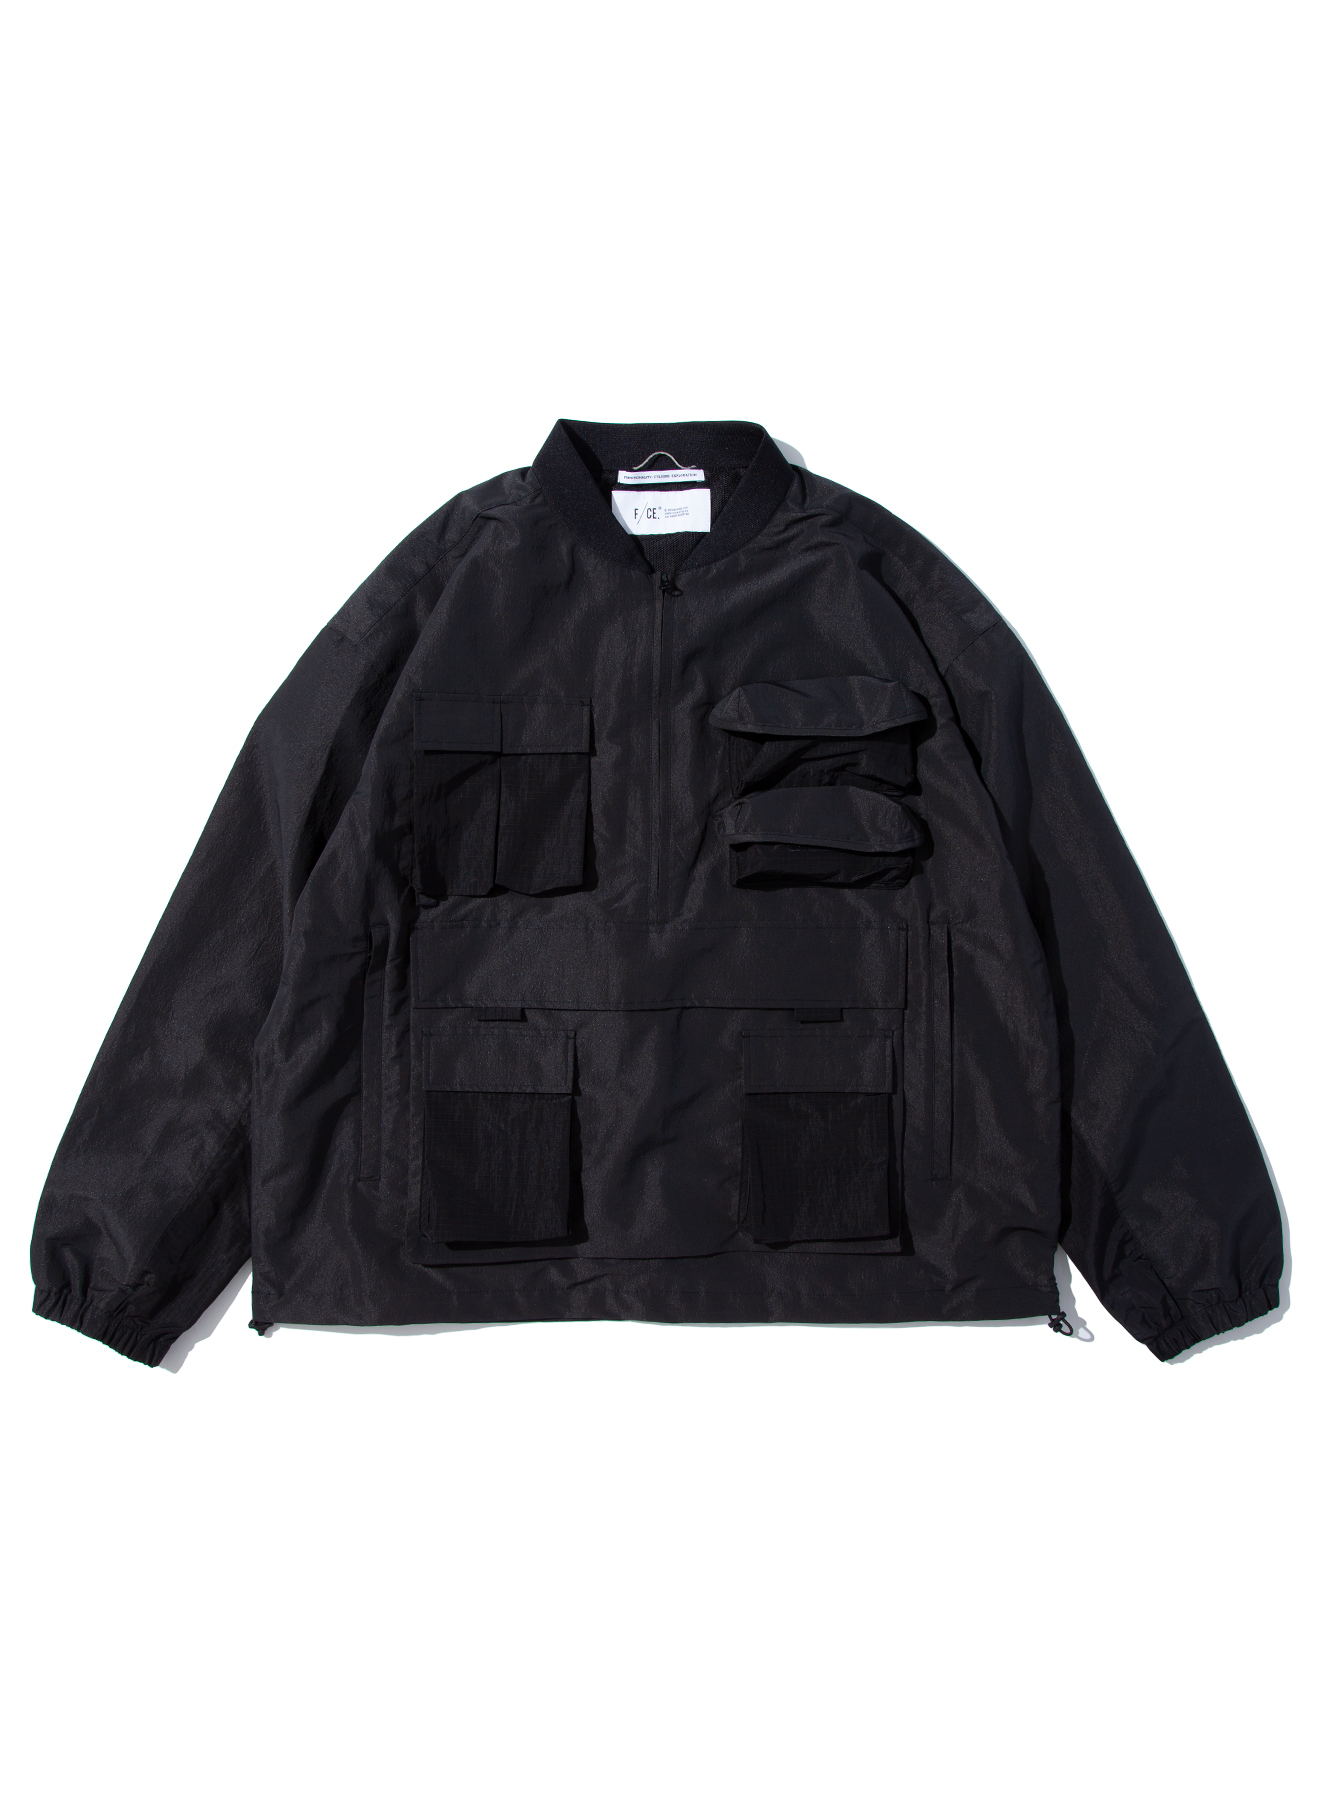 ギフト F CE. 19AW Norfolk Shirt Jacket aob.adv.br